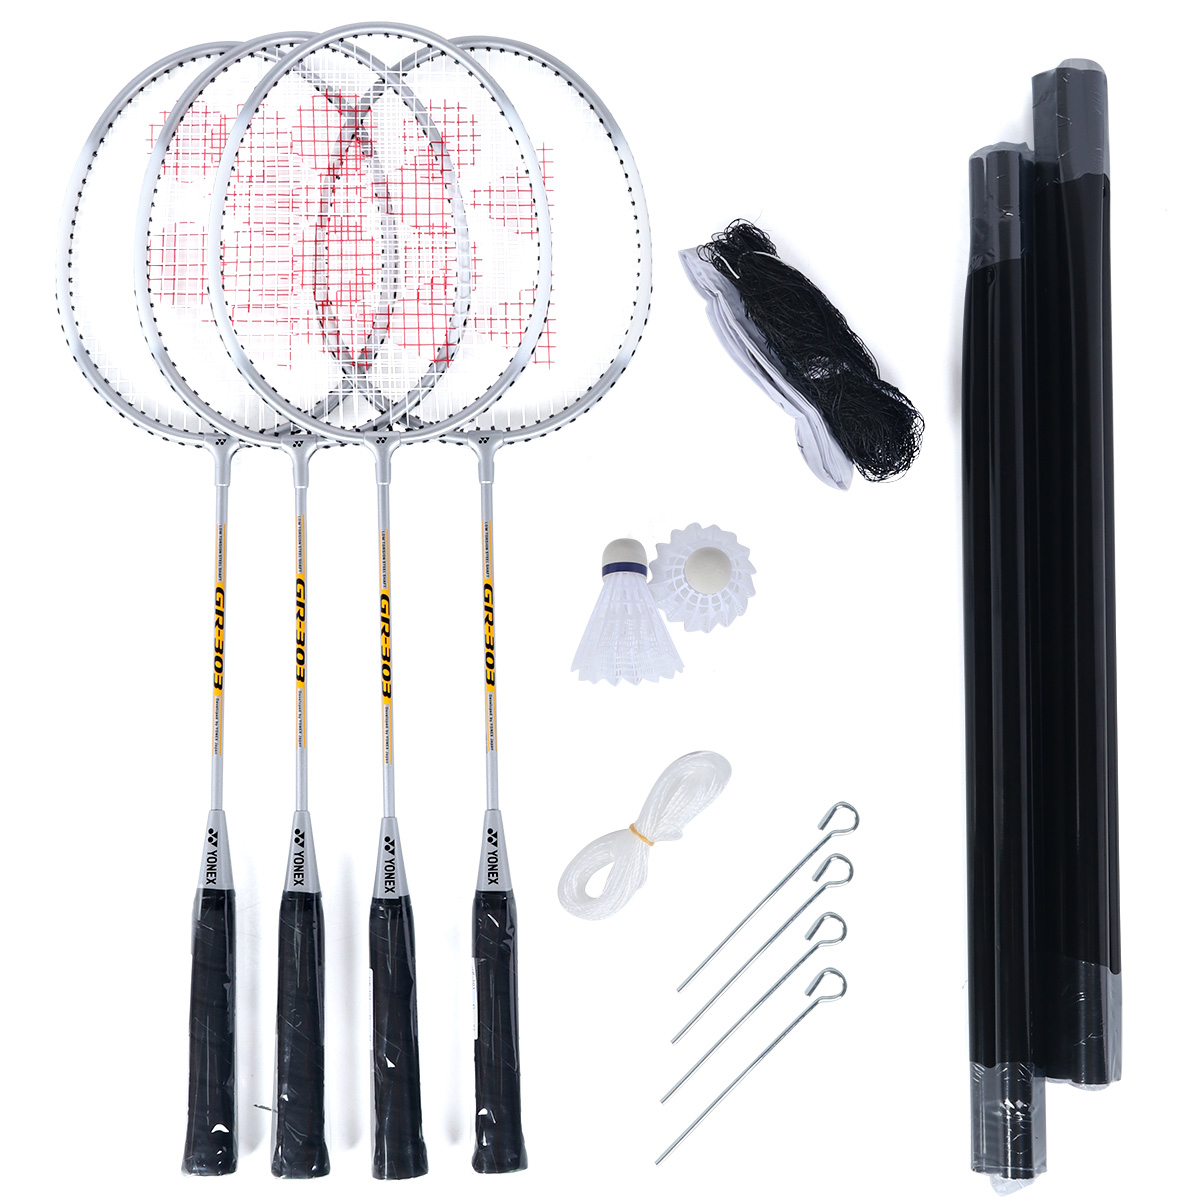 Kit Badminton Yonex GR-303 com 4 Raquetes e 2 Petecas